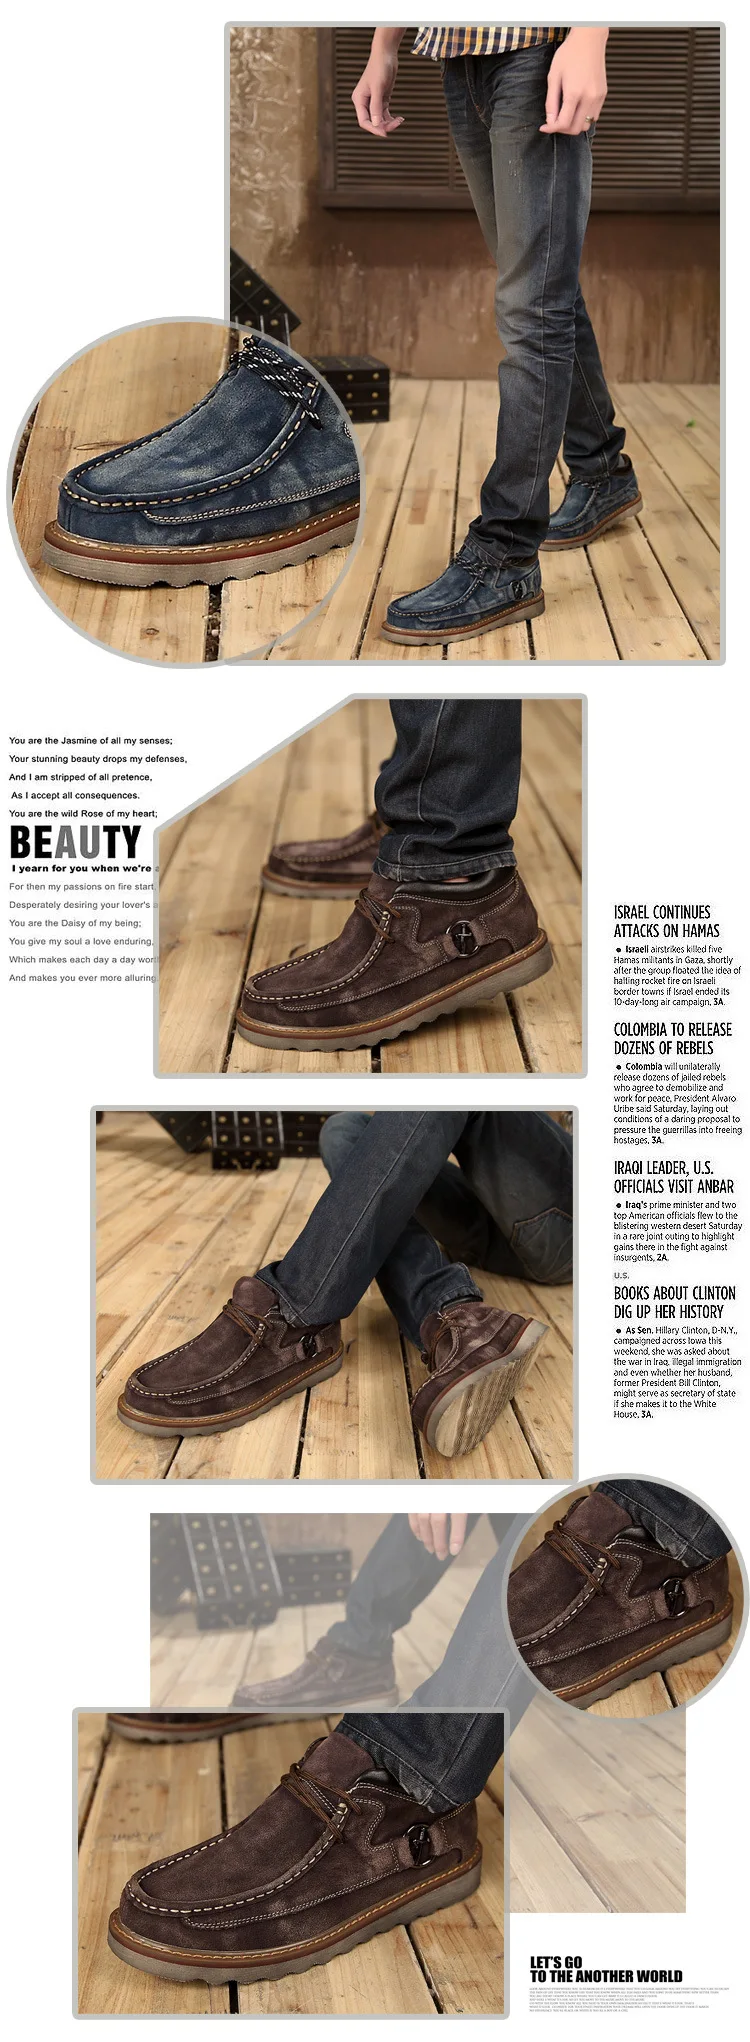 Merkmak/осенне-зимние повседневные мужские теплые ботинки из натуральной кожи; винтажные классические мужские ботинки на платформе с толстой подошвой; мужская обувь на плоской подошве